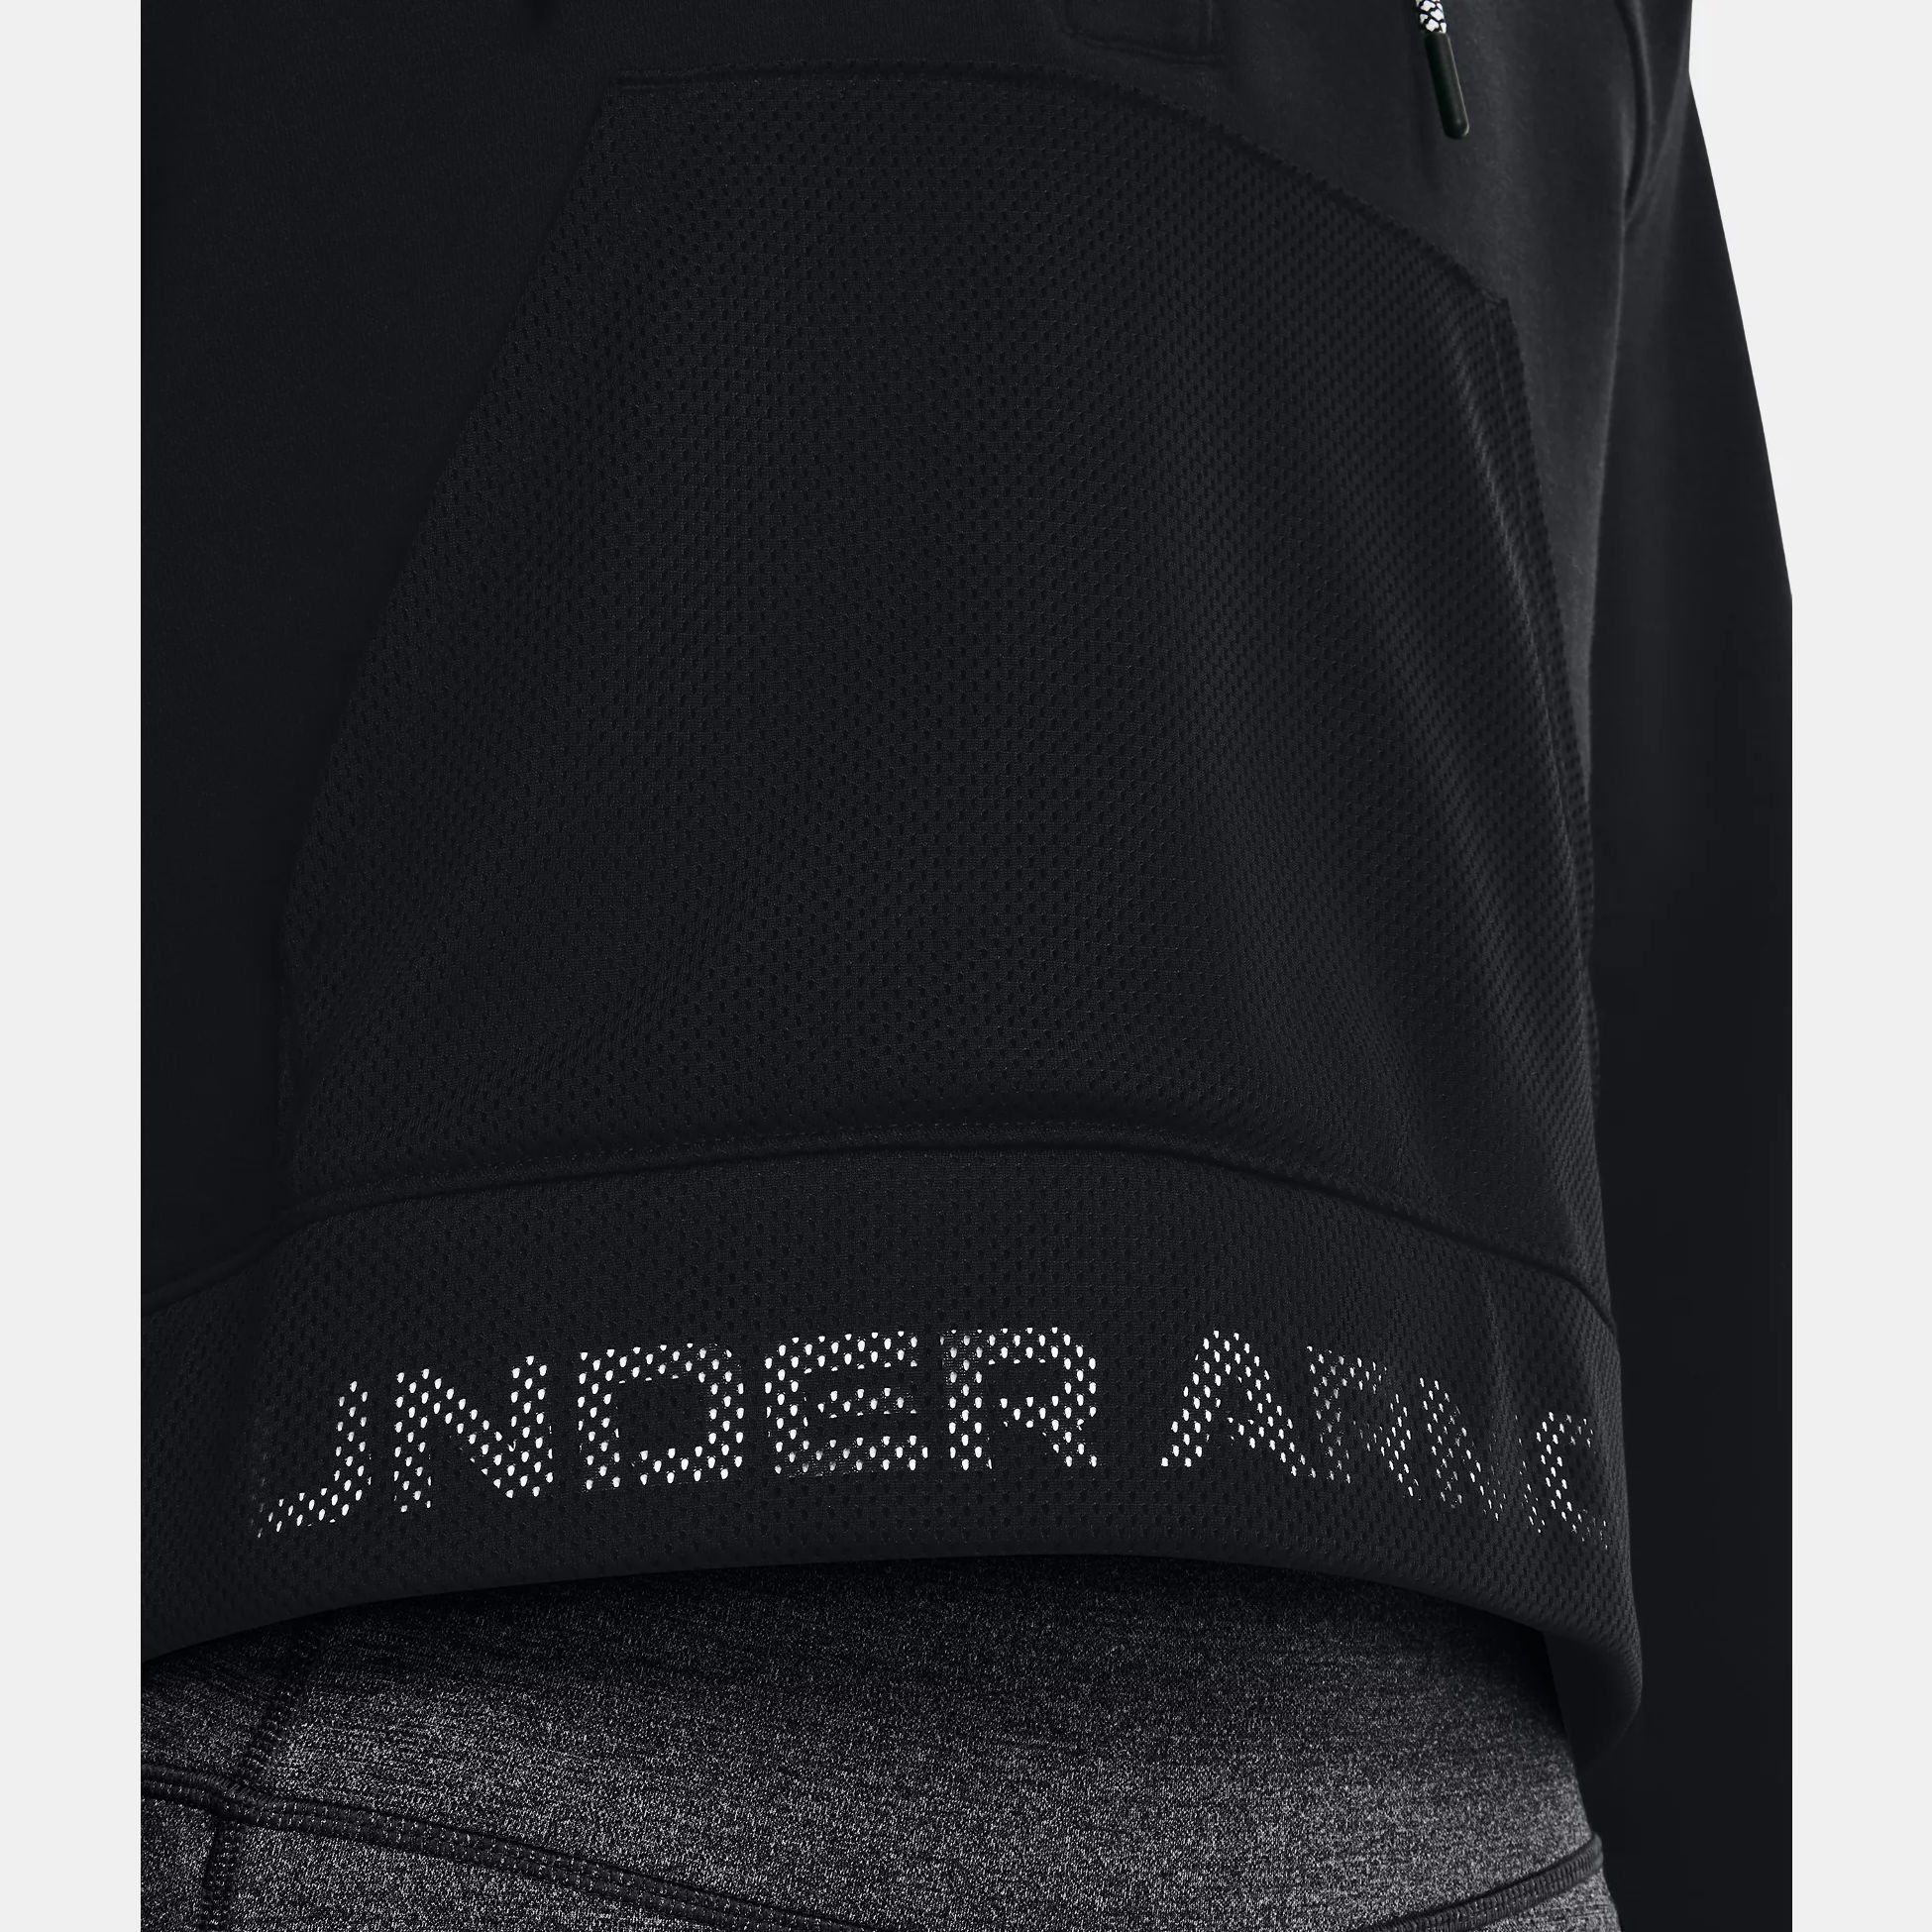 Hoodies -  under armour UA Rival Fleece Mesh Hoodie